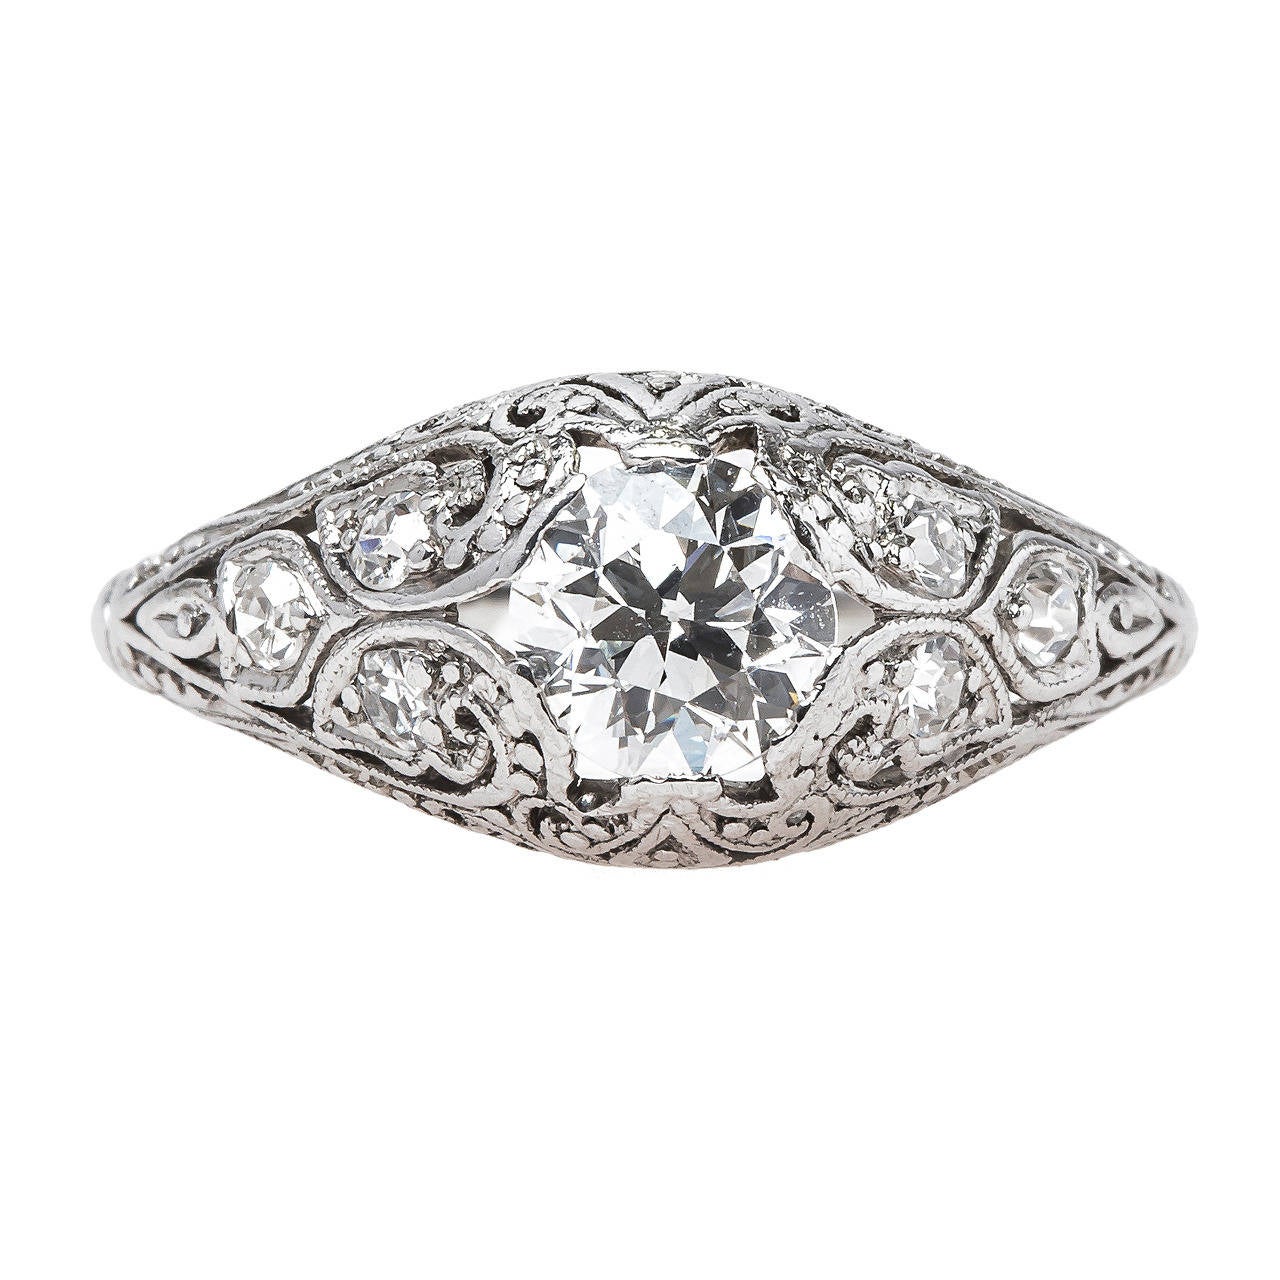 Exquisitely Handcrafted Edwardian Era Platinum Engagement Ring